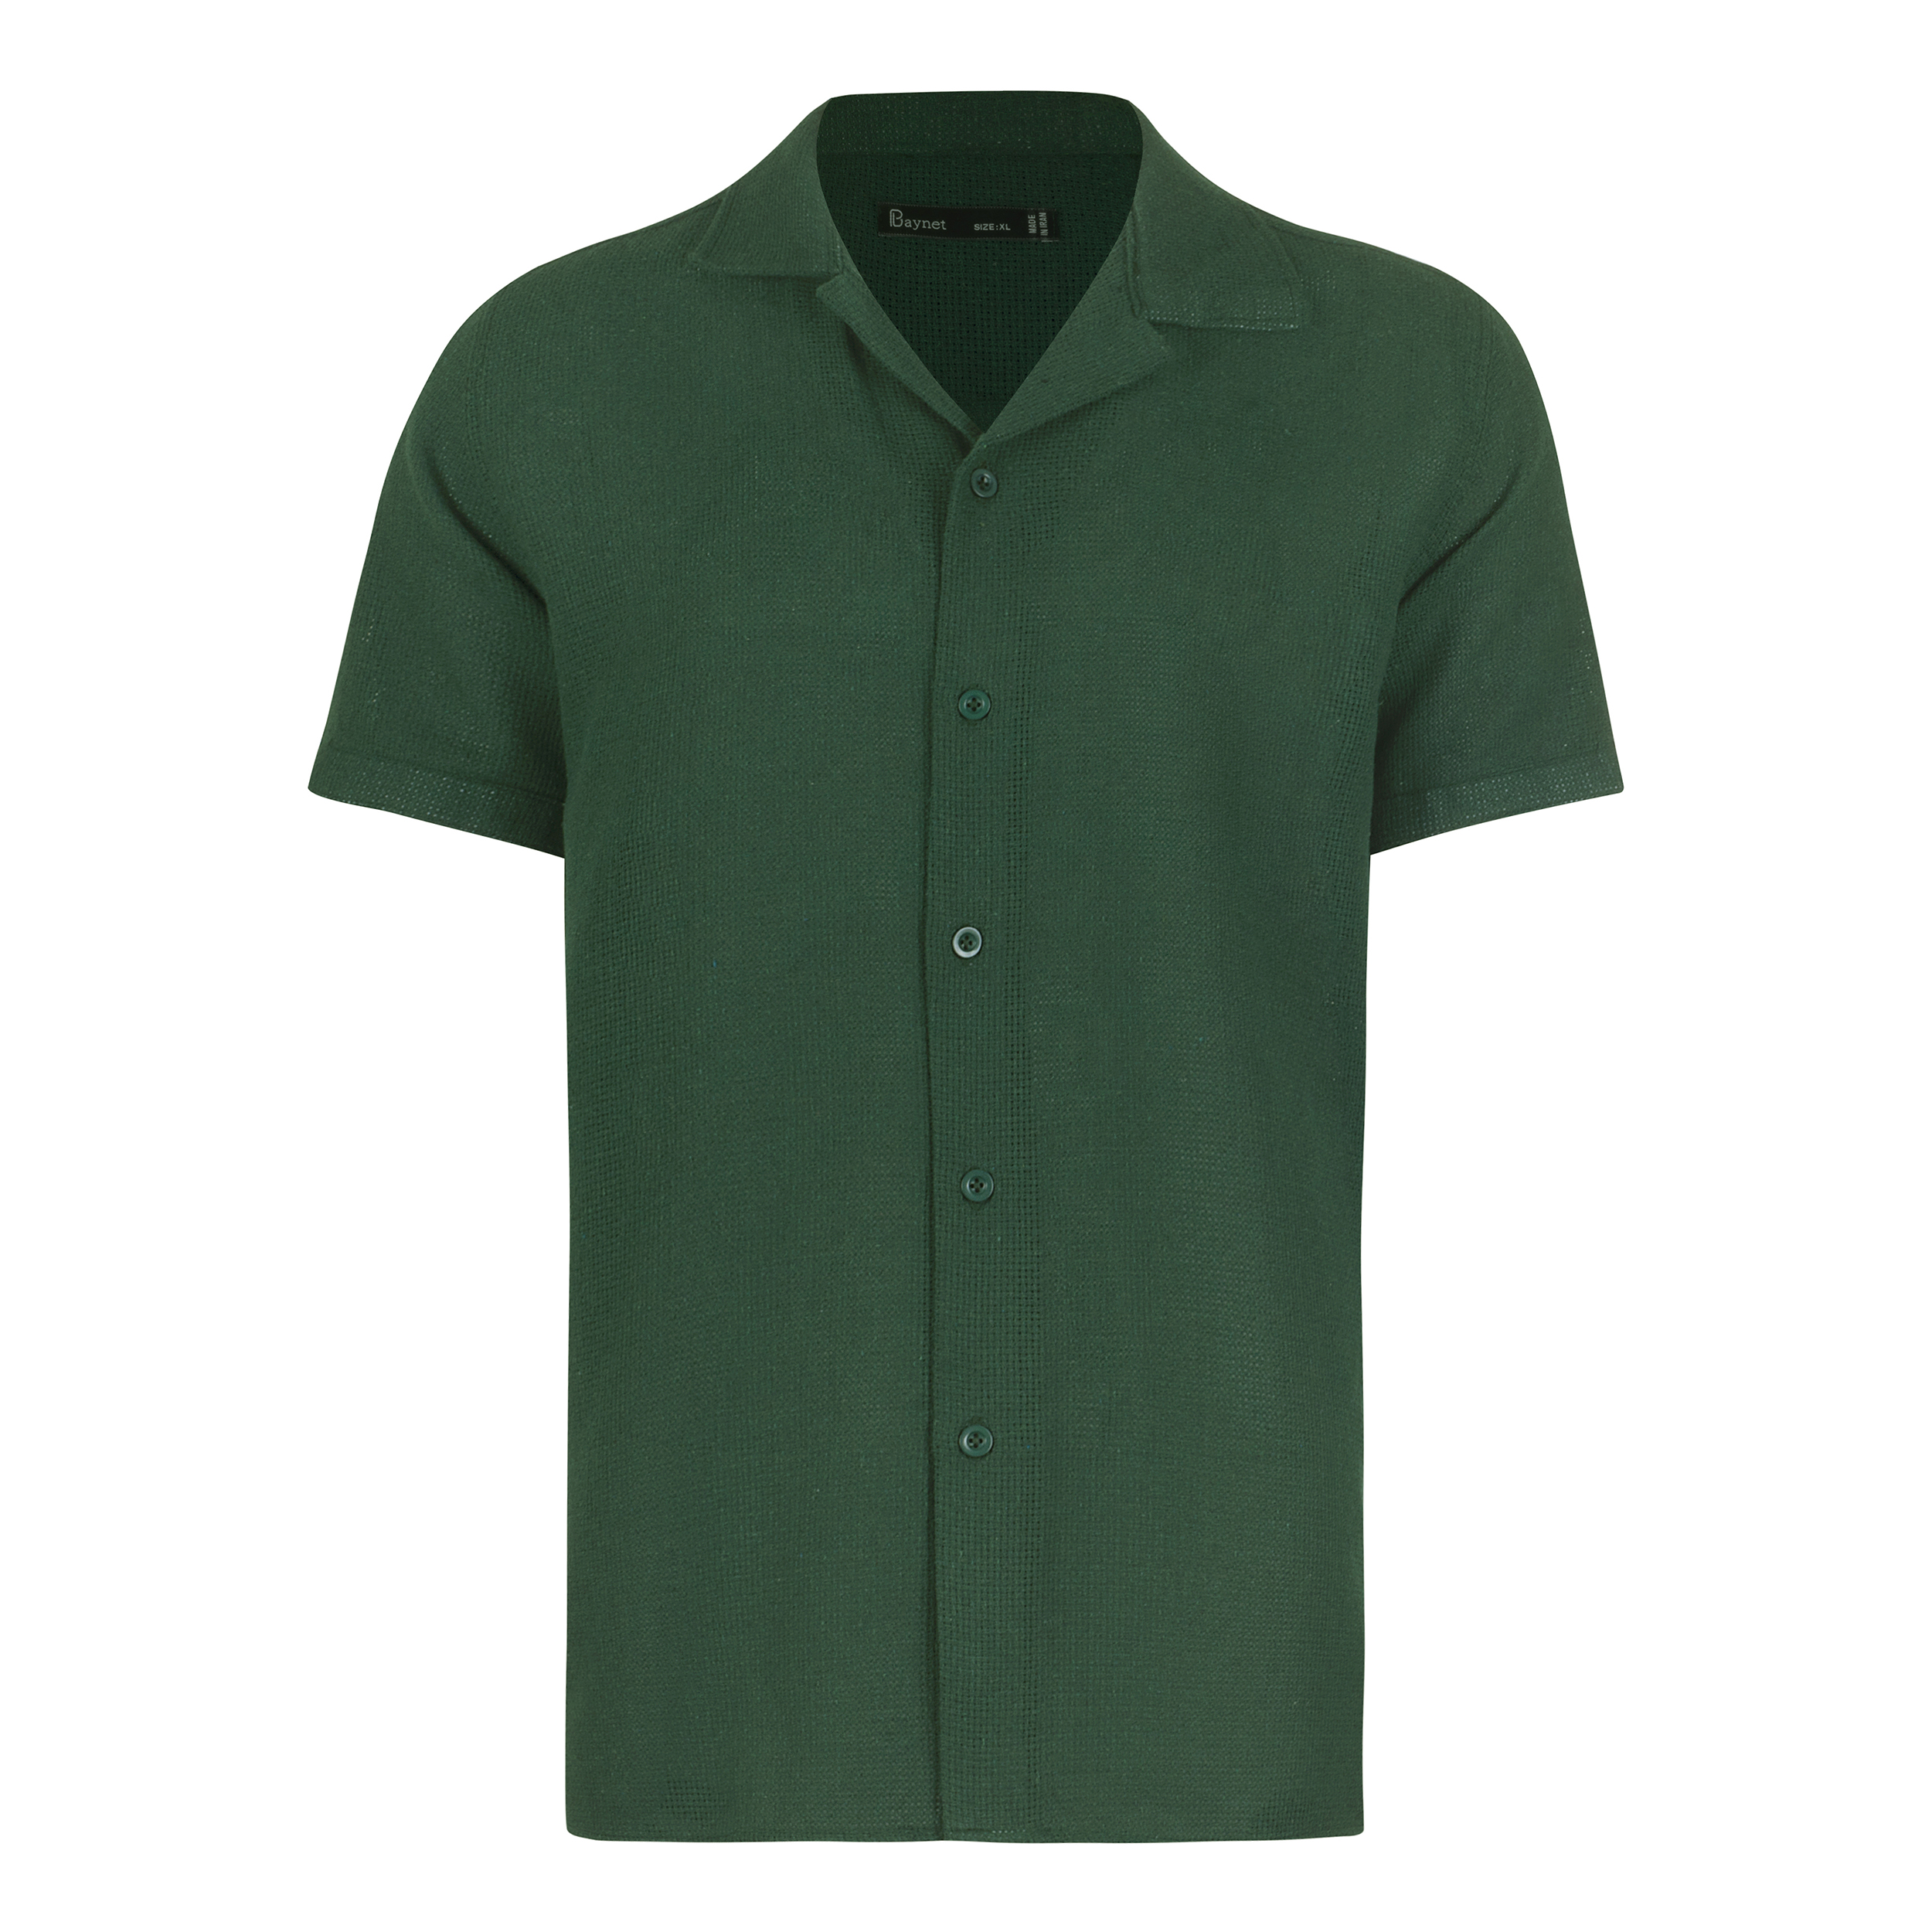 پیراهن آستین کوتاه مردانه باینت مدل 772-3 رنگ سبز